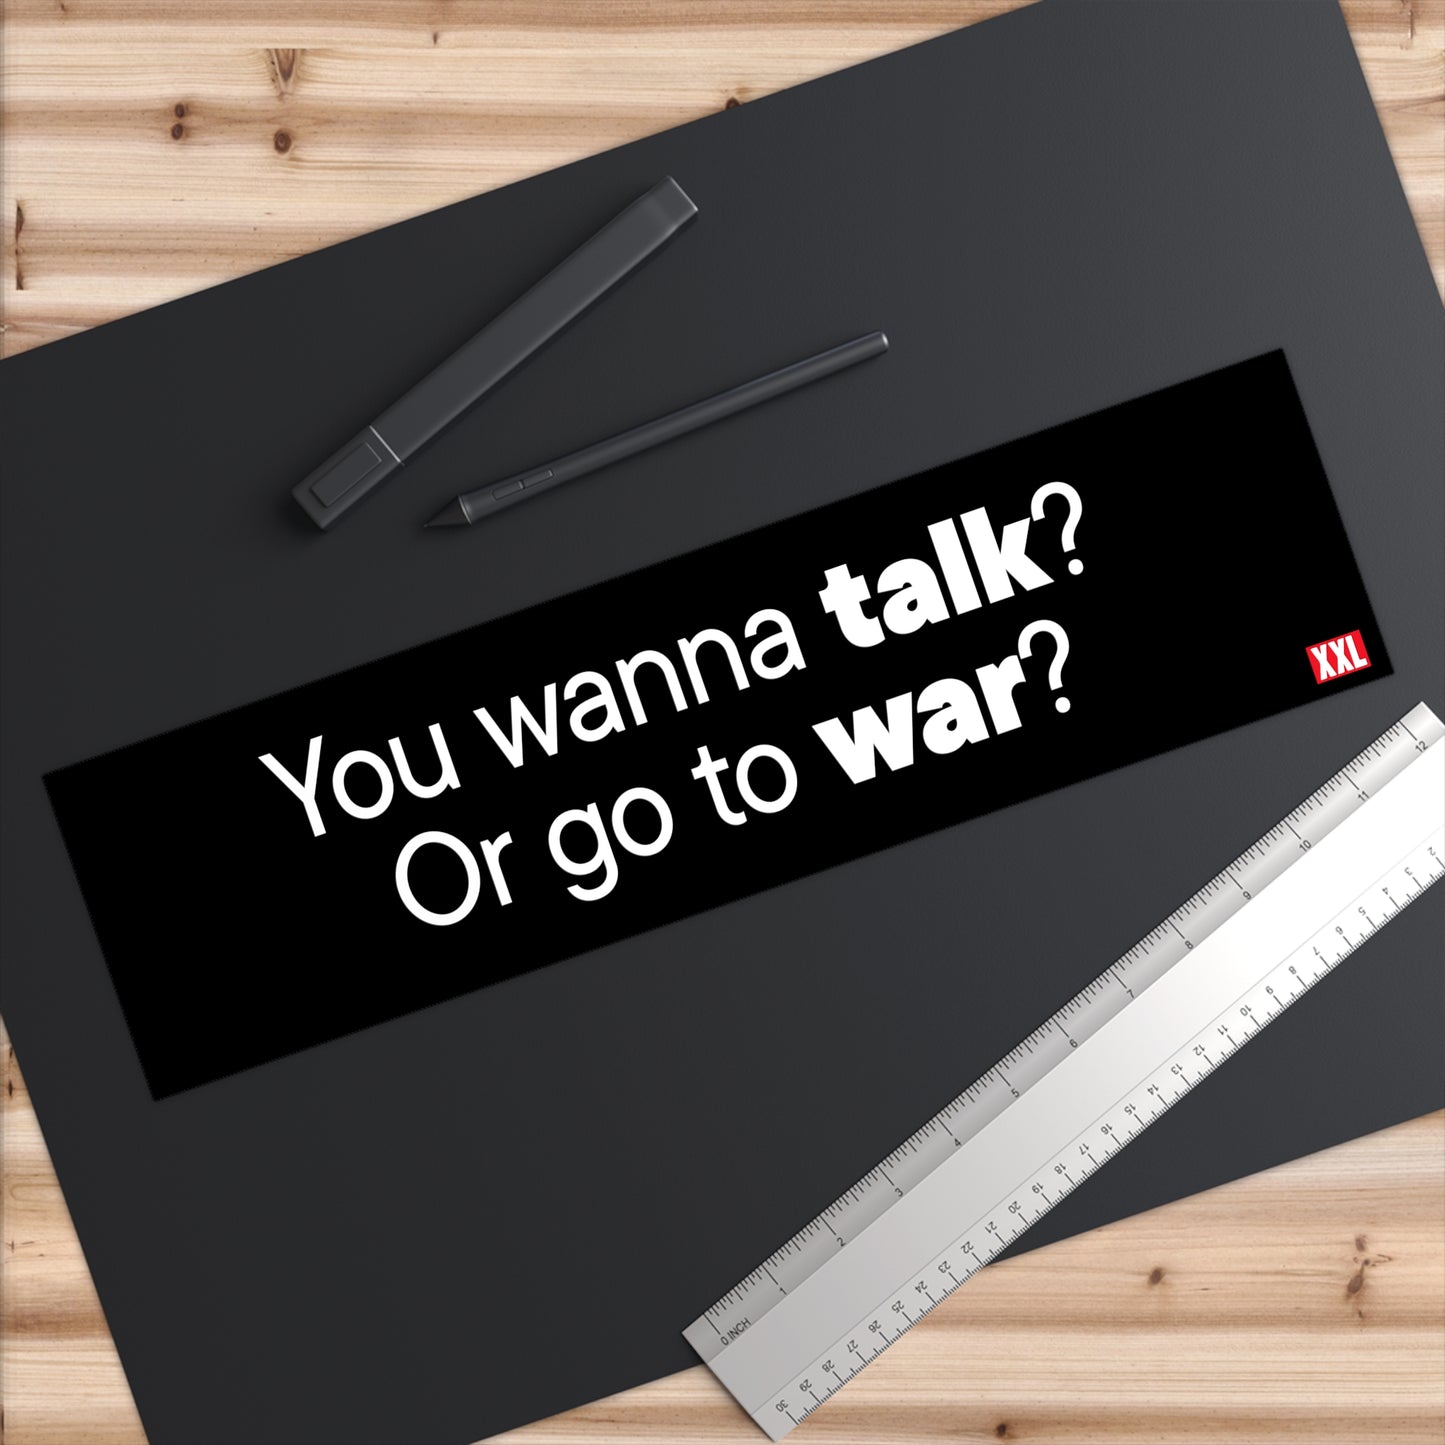 Talk or War Bumper Stickers